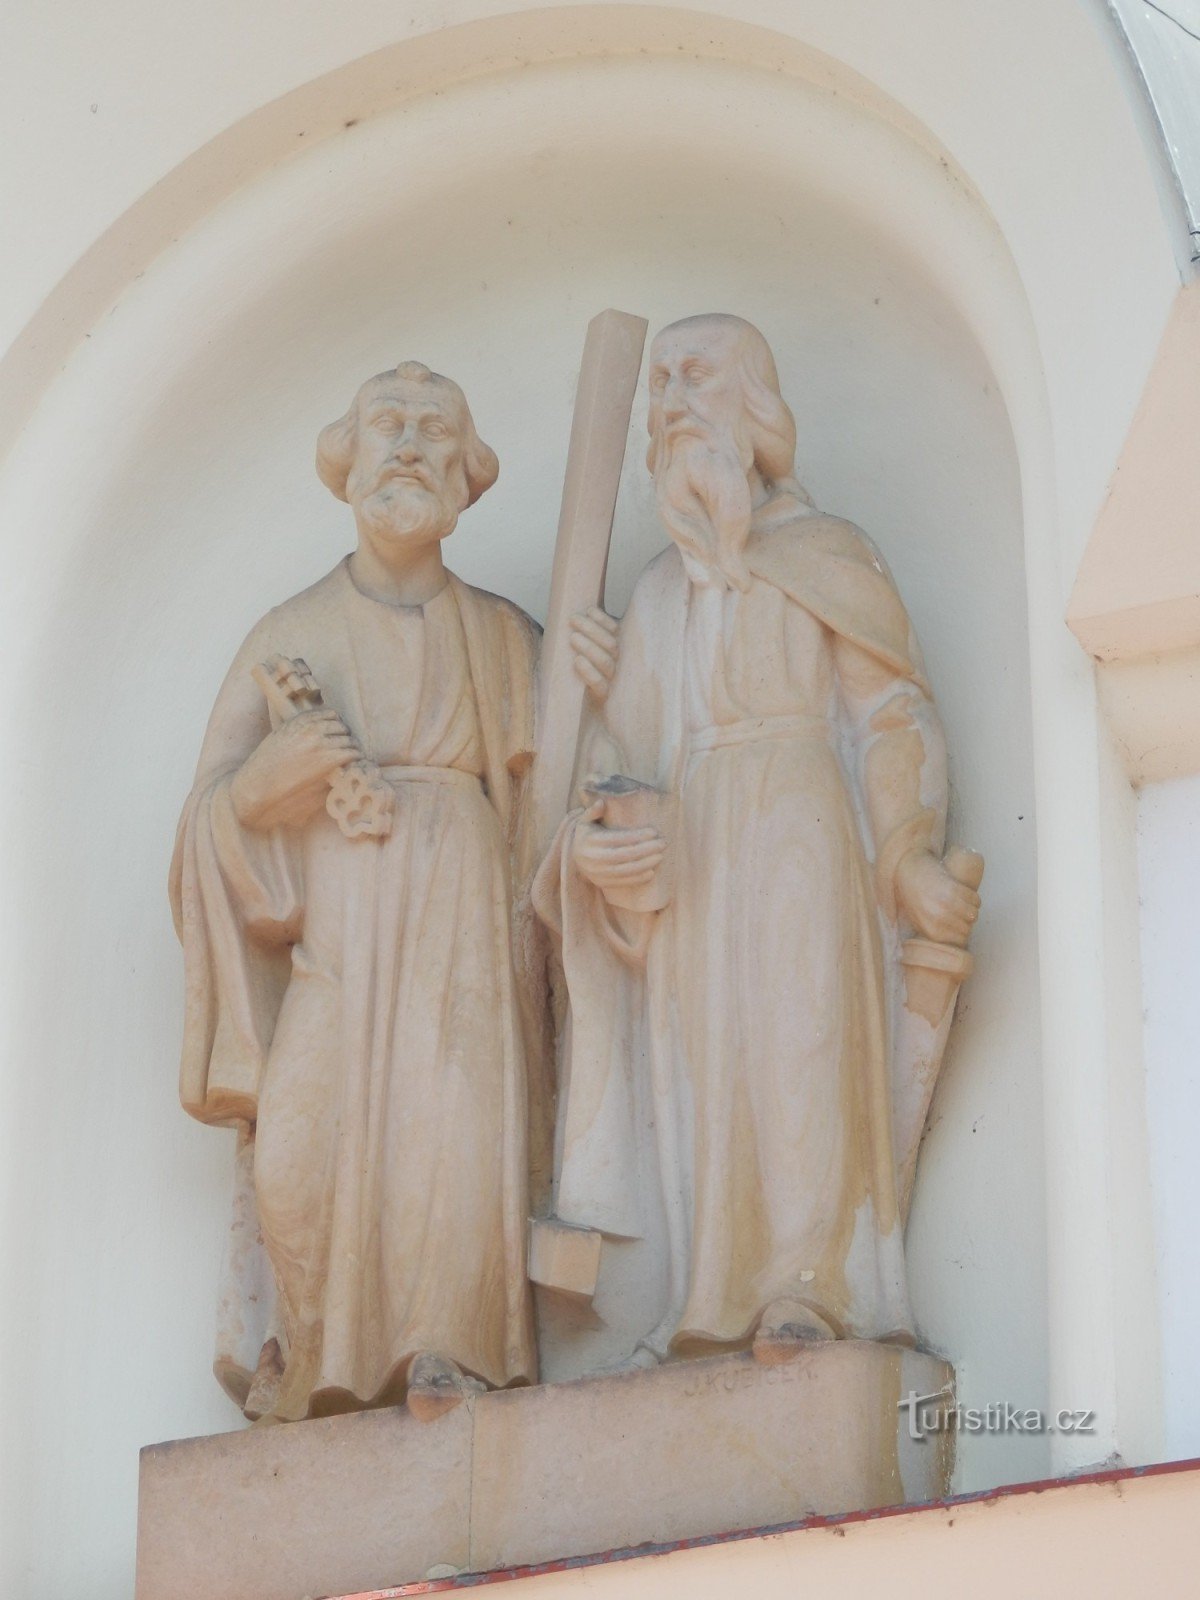 Pyhän kirkko Pietari ja Paavali Štěpánov nad Svratkoussa